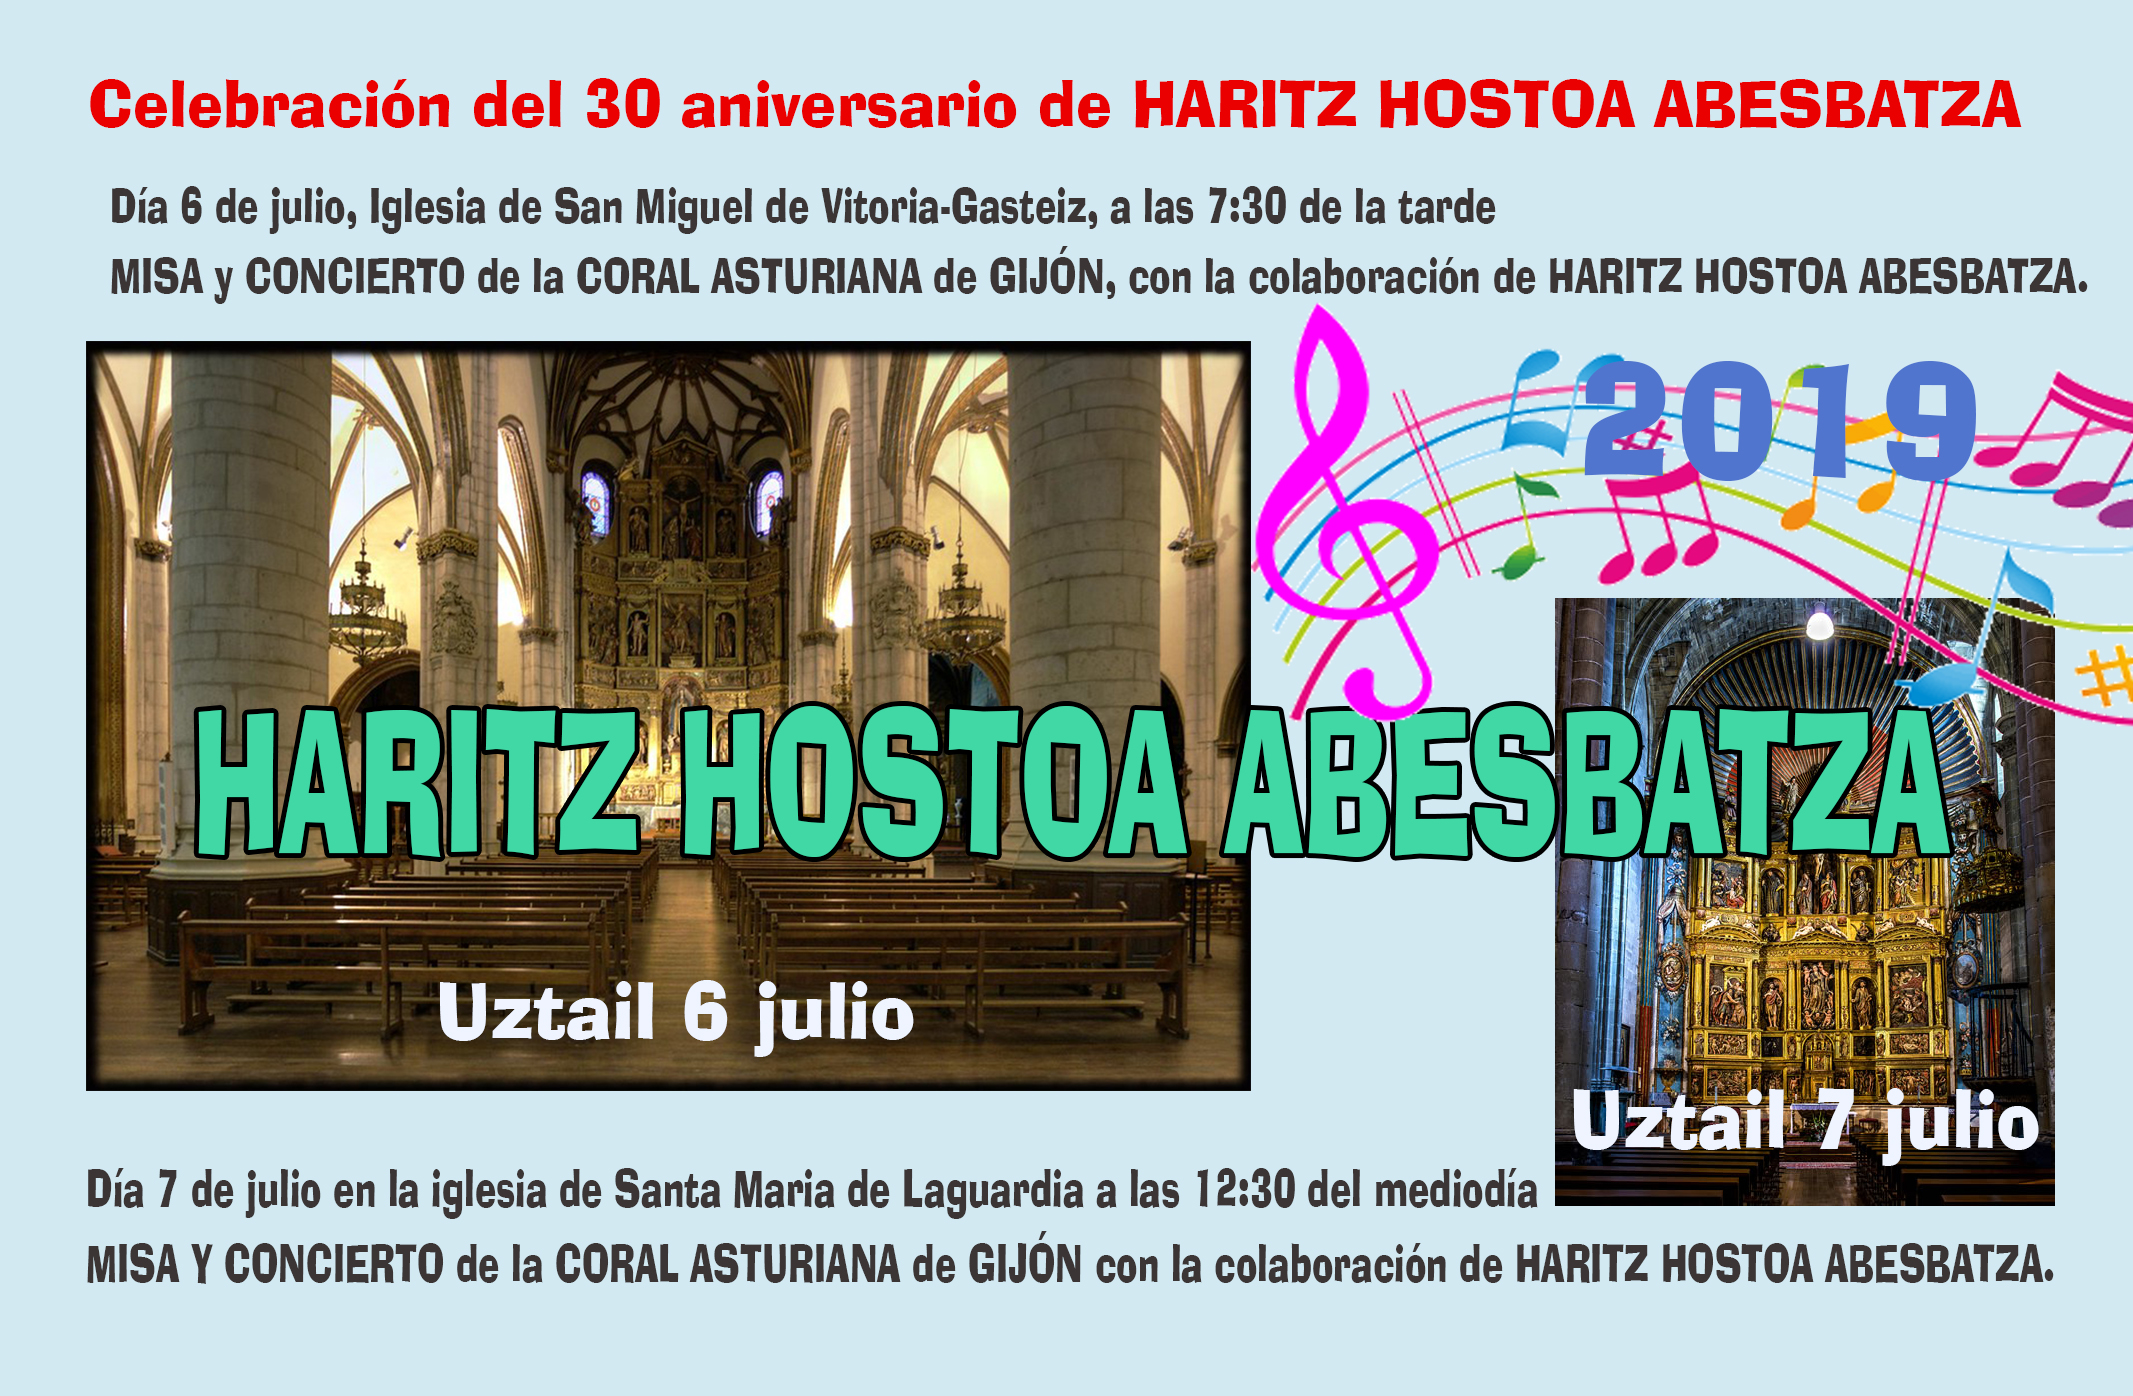 Celebración del 30 aniversario de HARITZ HOSTOA ABESBATZA, se van a celebrar dos conciertos el próximo fin de semana, los días 6 y 7 julio 2019